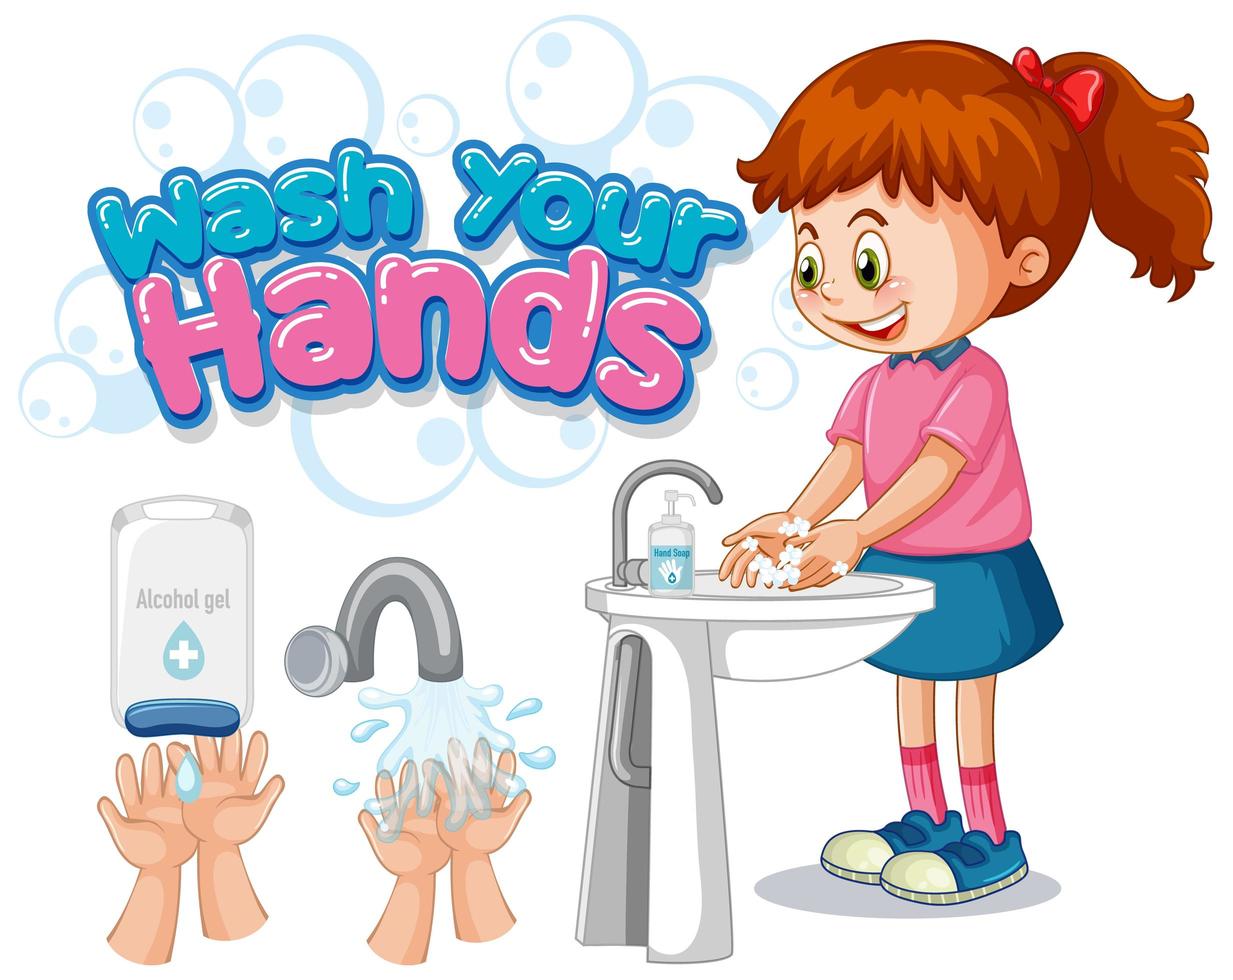 lavati le mani poster design con la ragazza che si lava le mani vettore